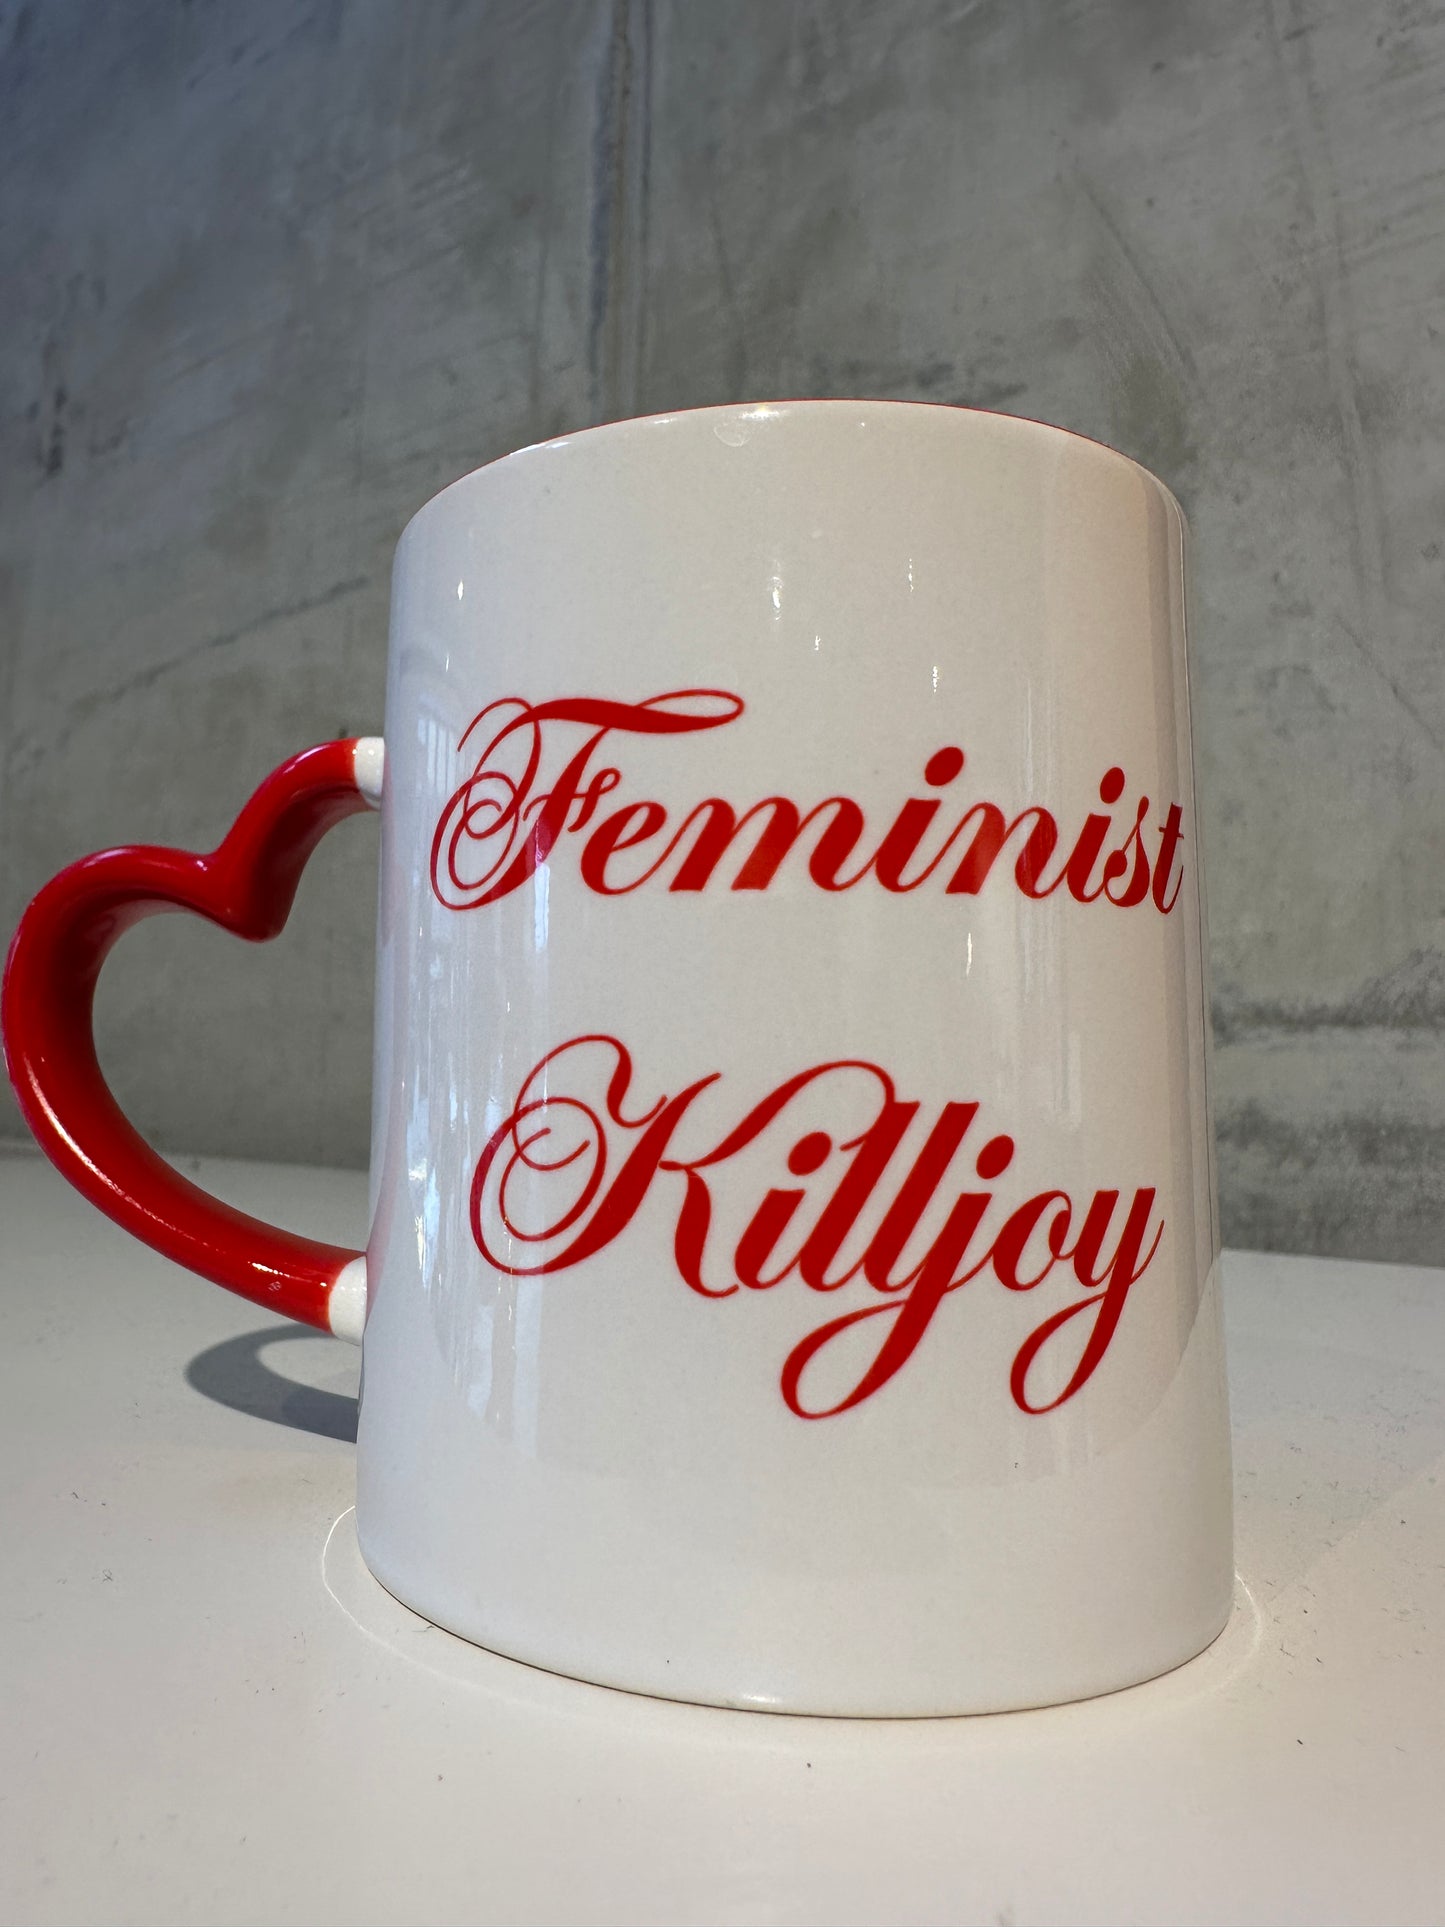 Madame Premier Feminist Killjoy Mug